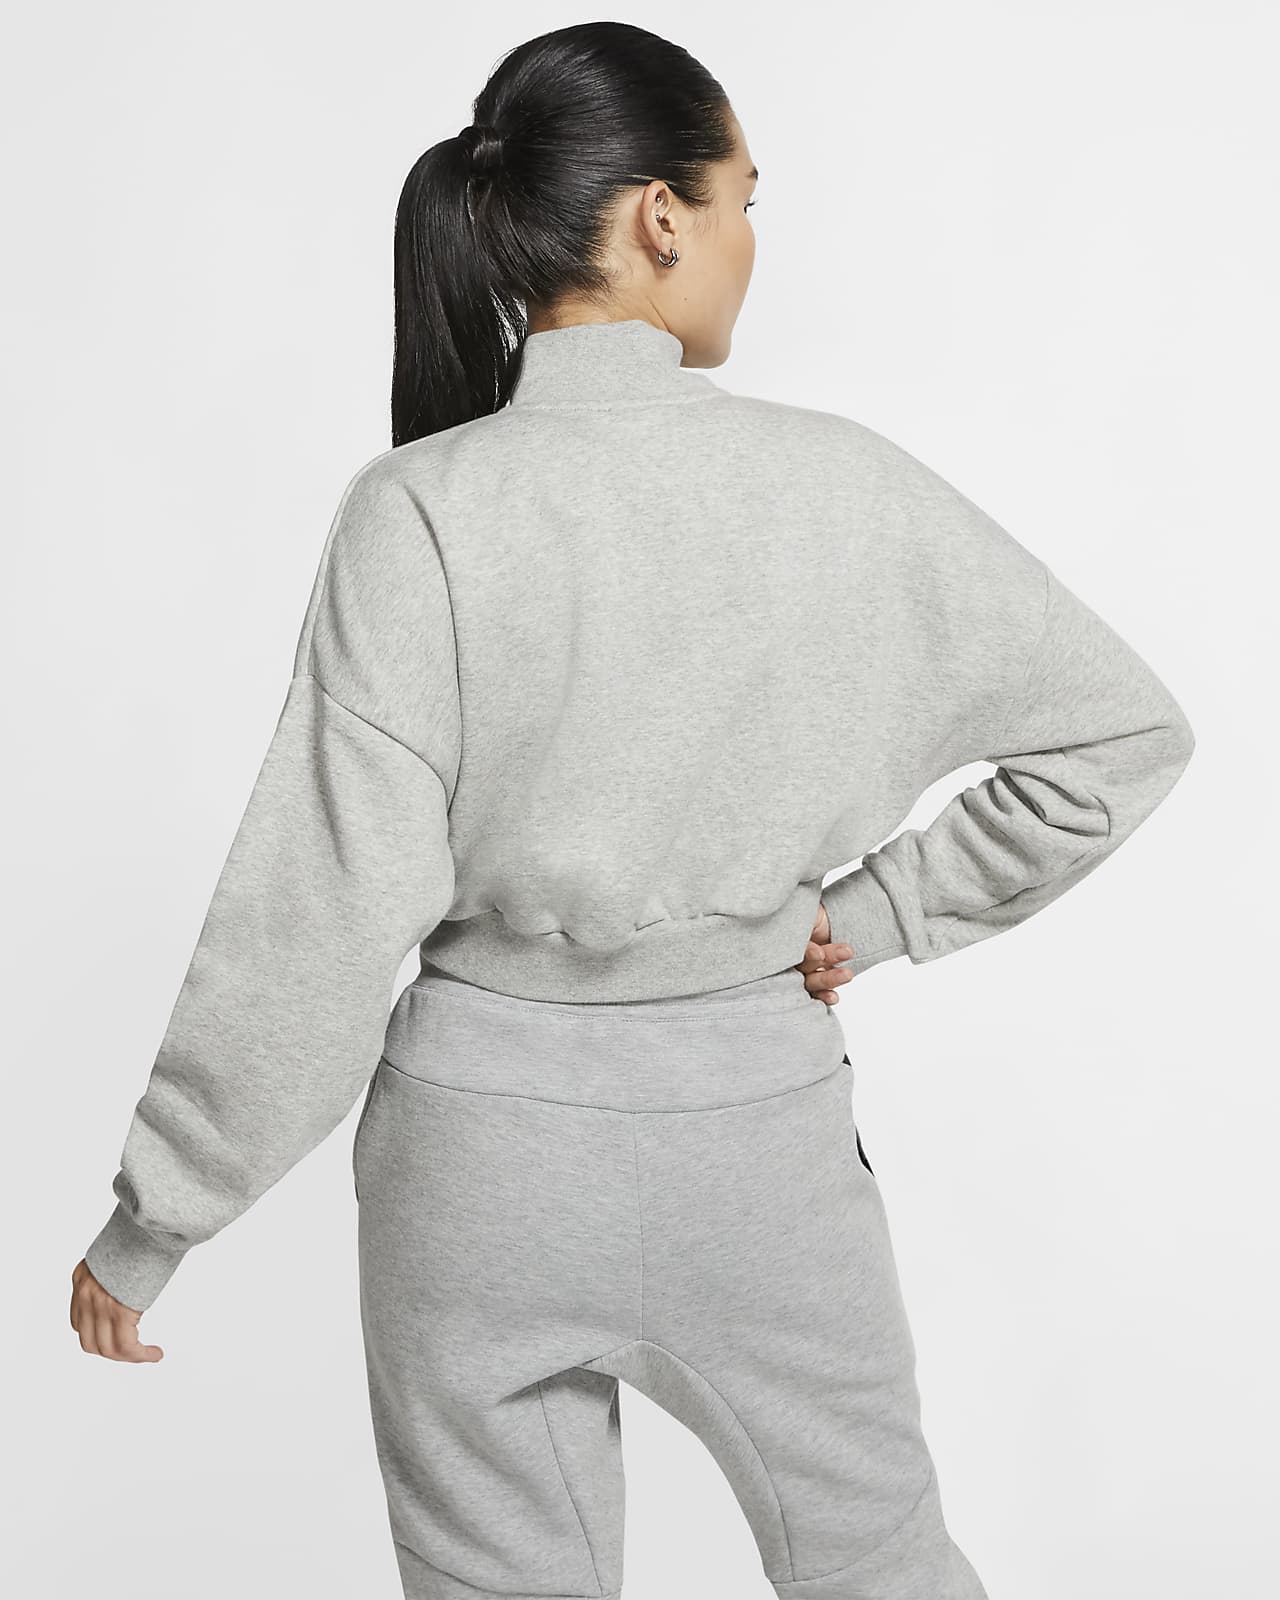 Fleece Long-Sleeve Crop Top. Nike LU